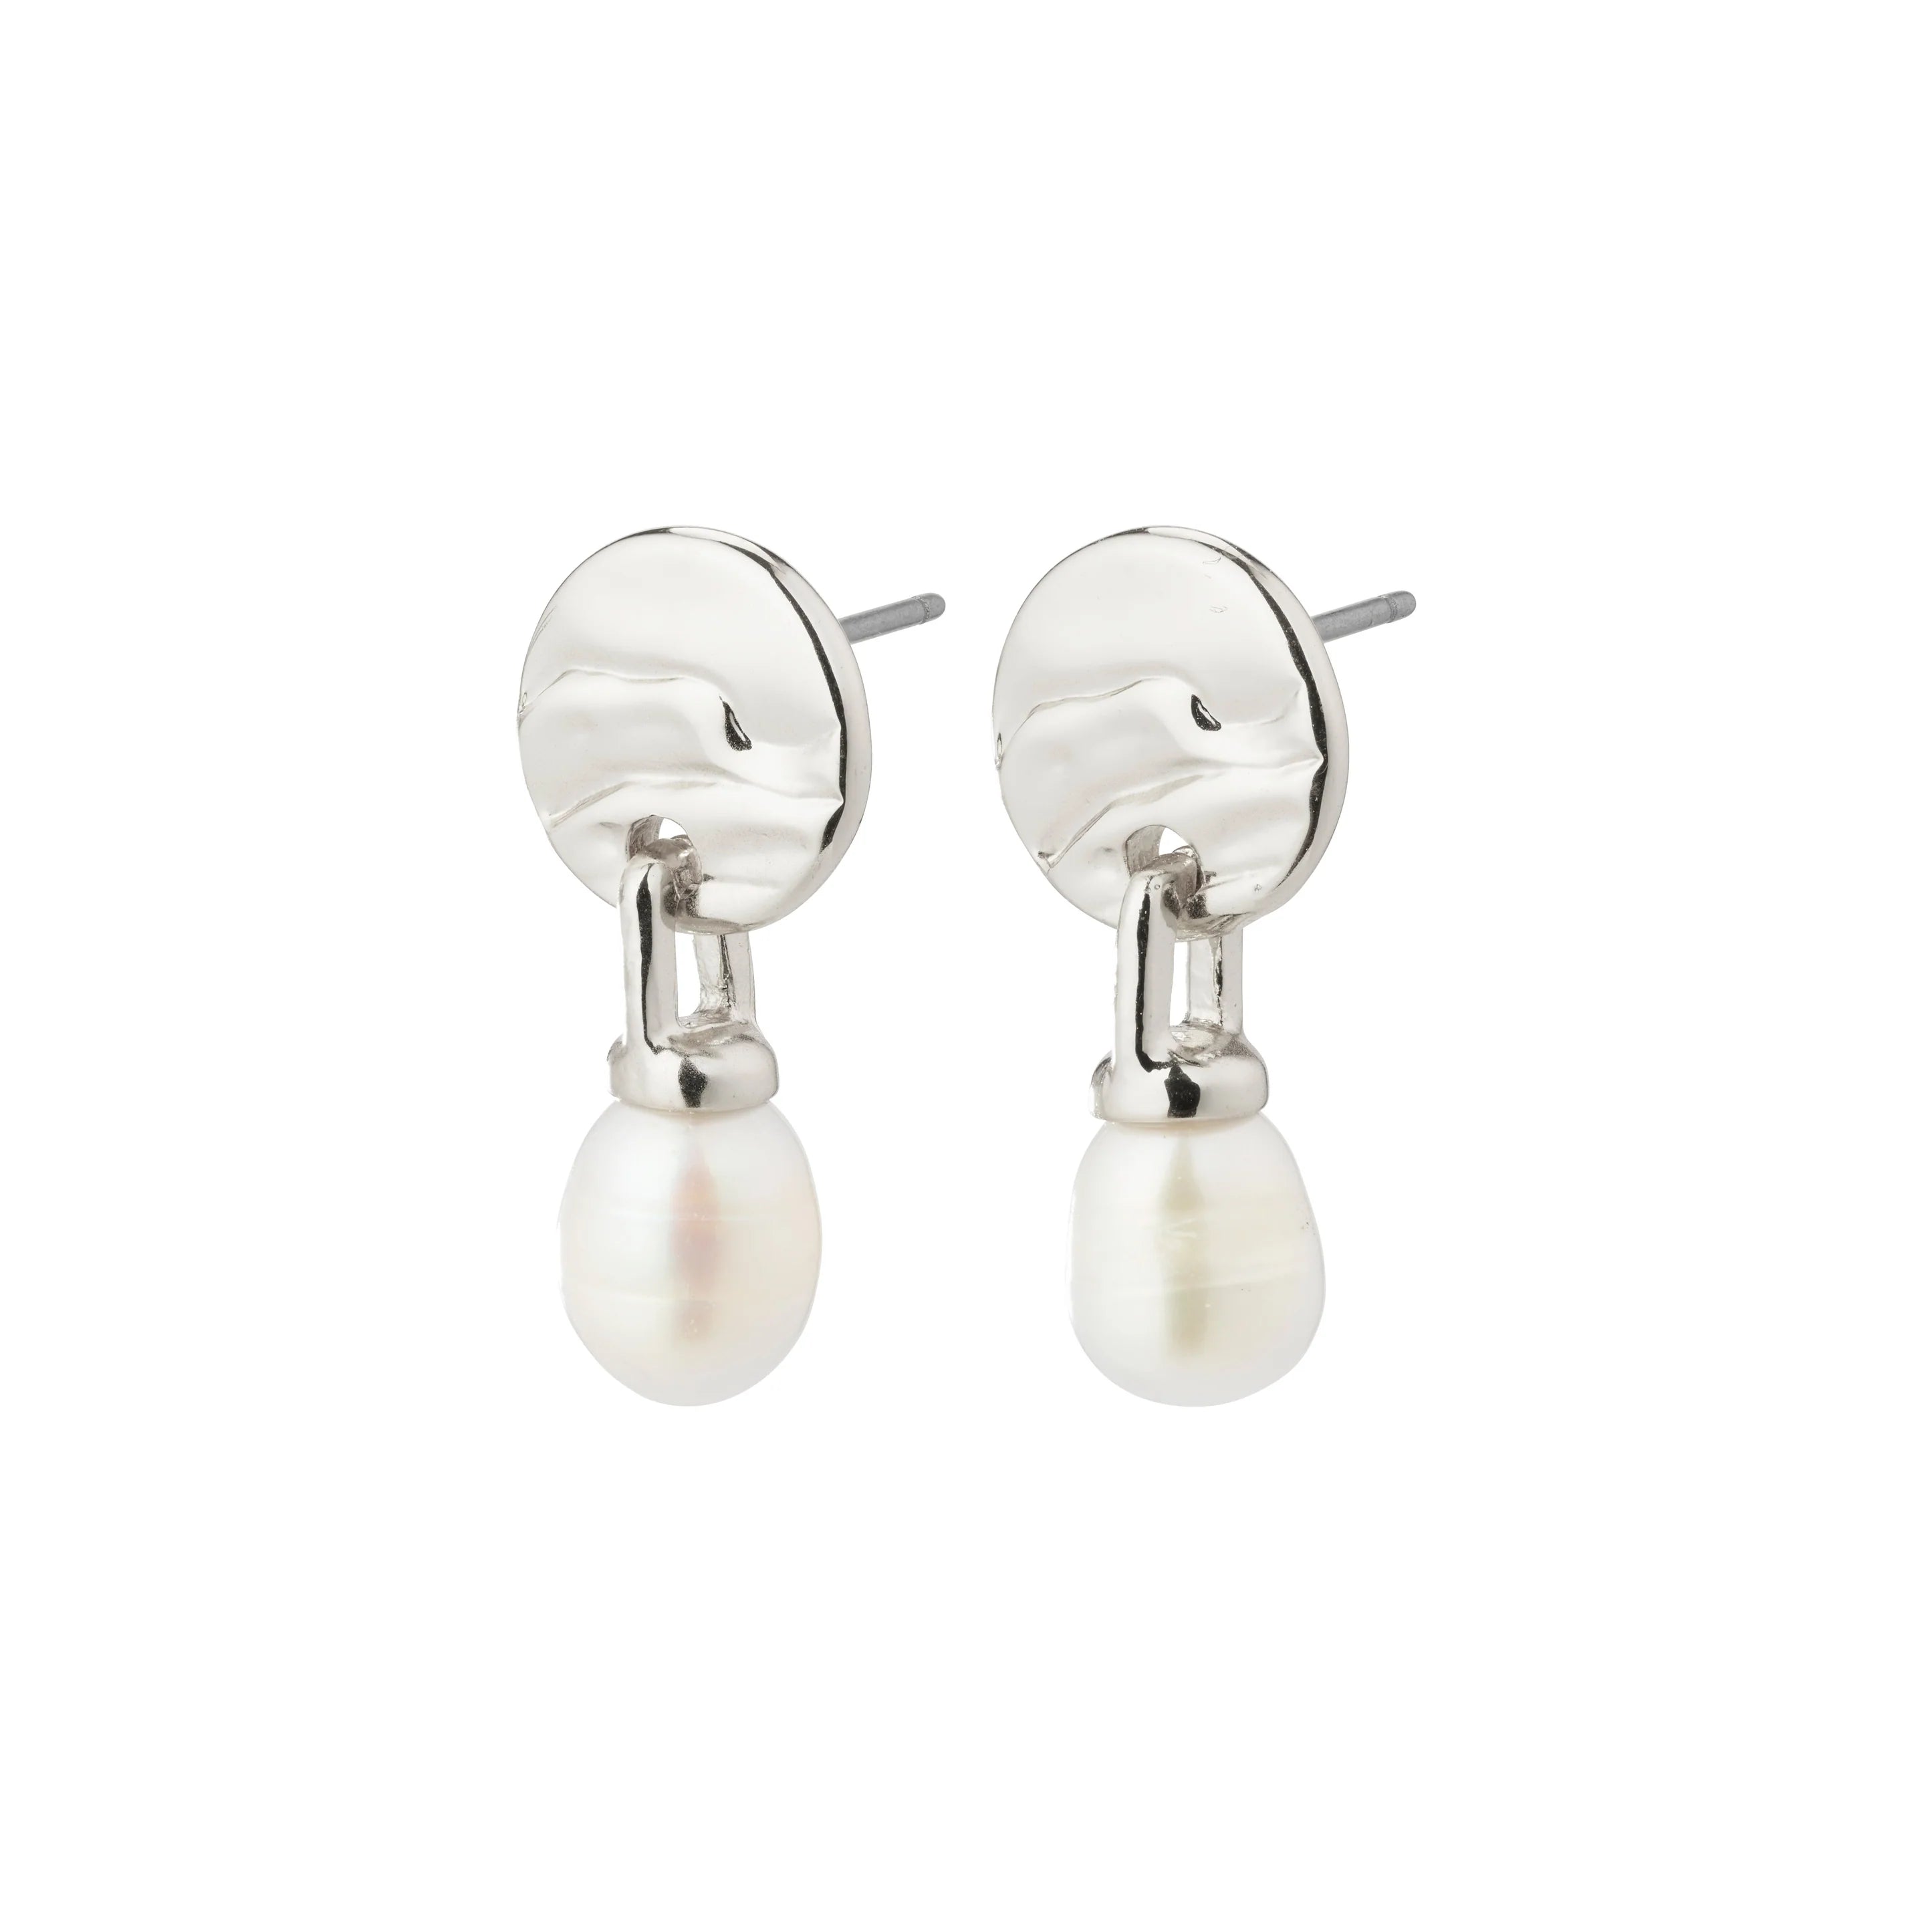 Heat freshwater pearl earrings Silver Plated